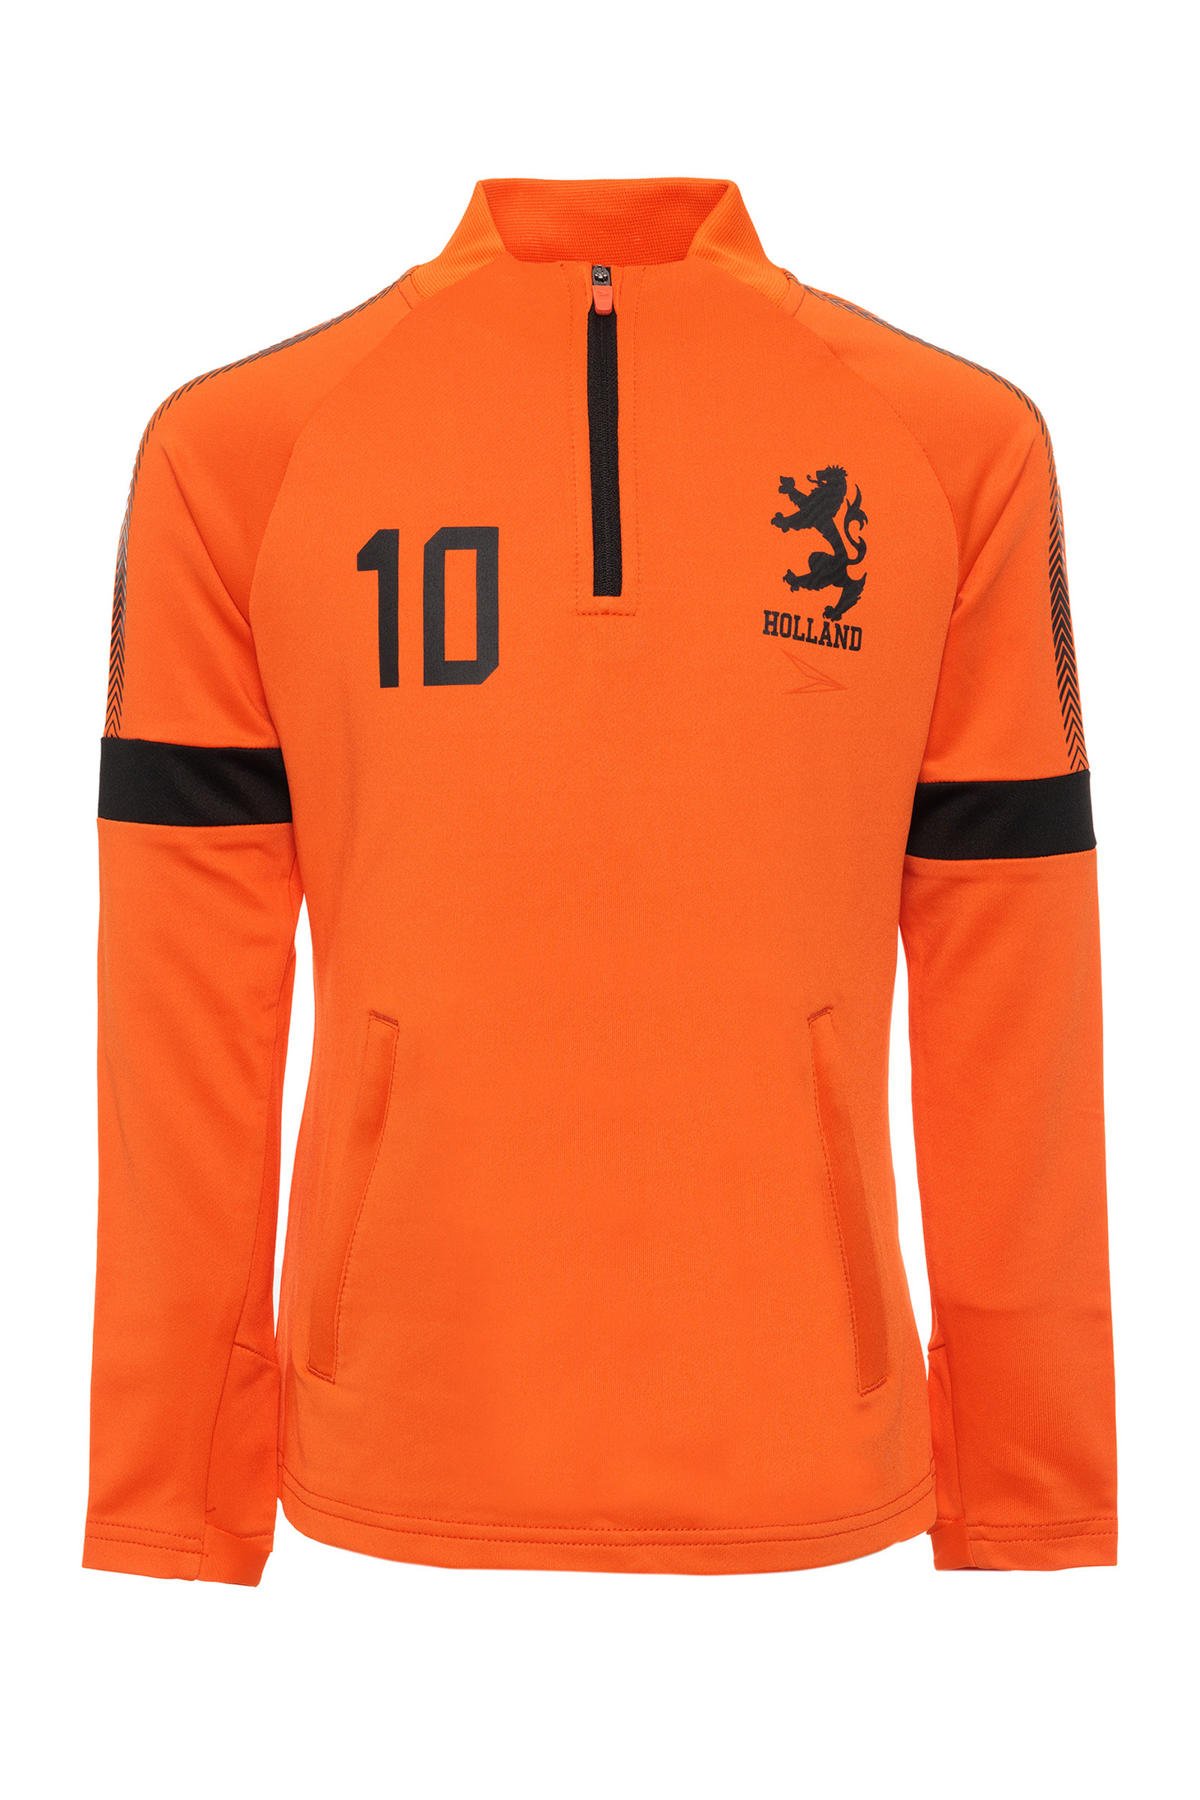 heilig Rechtzetten Getuigen Scapino Dutchy Junior sport T-shirt oranje | wehkamp